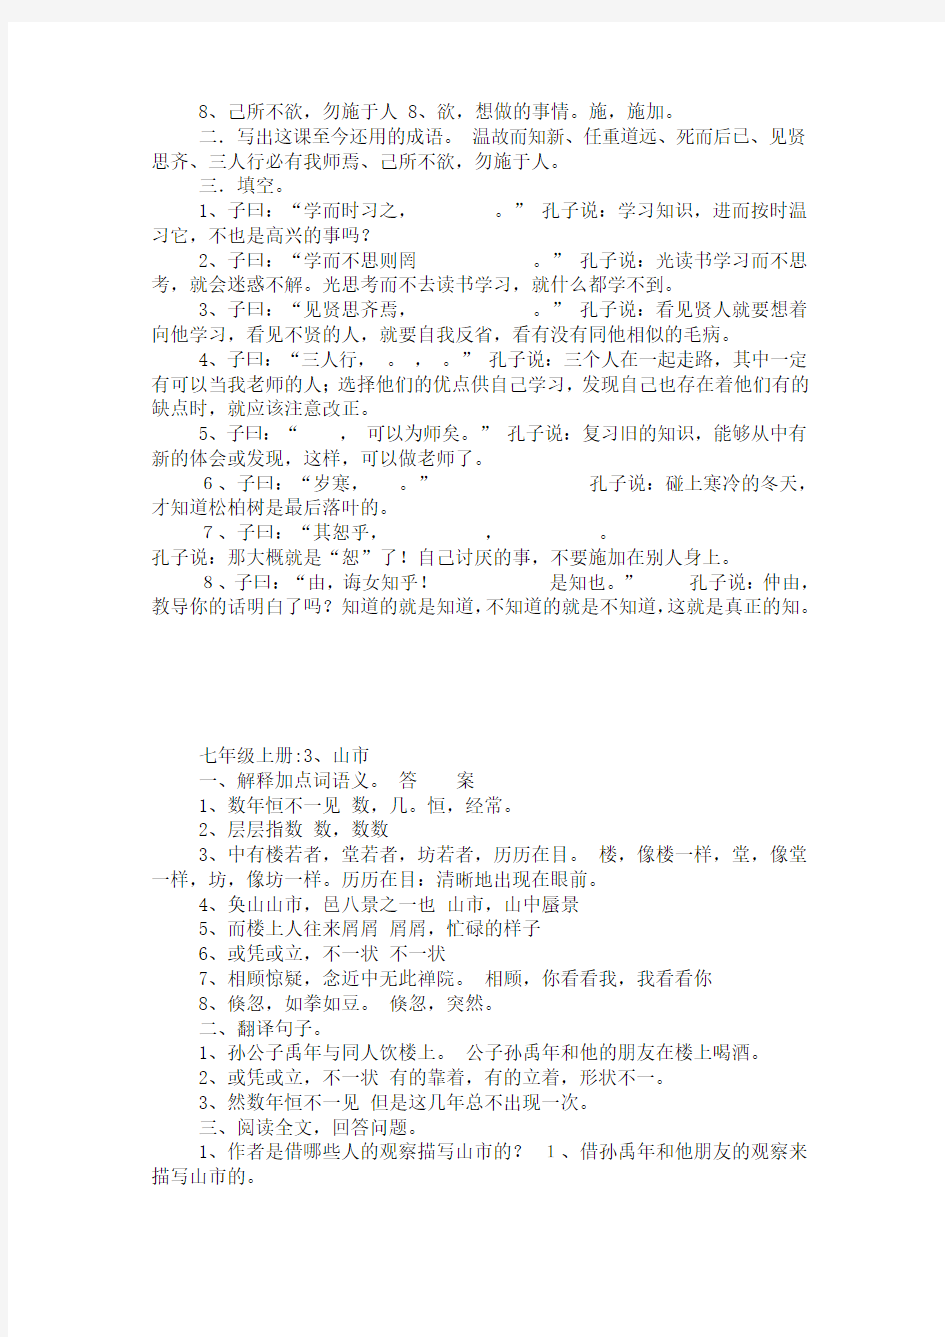 人教版初中文言文 字词解释、翻译、问答题